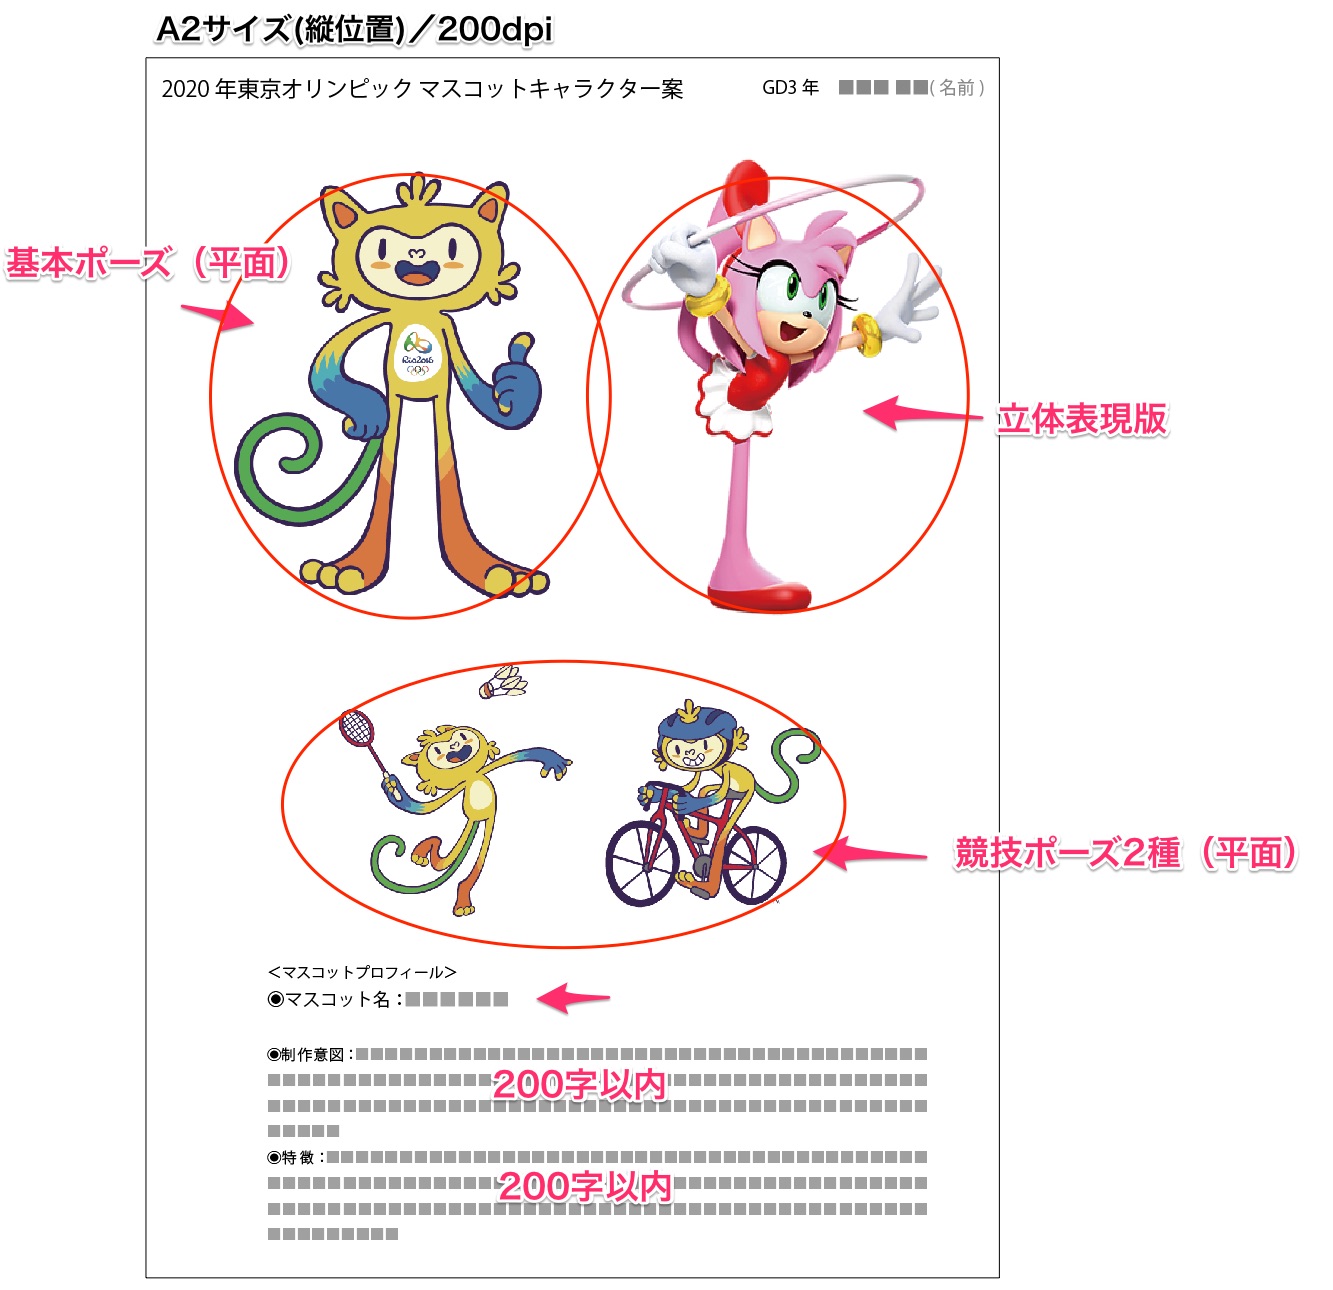 Nzu デジタルイラストレーション講座17 7月3日 第6回 年東京オリンピックのマスコットキャラクターの制作 1